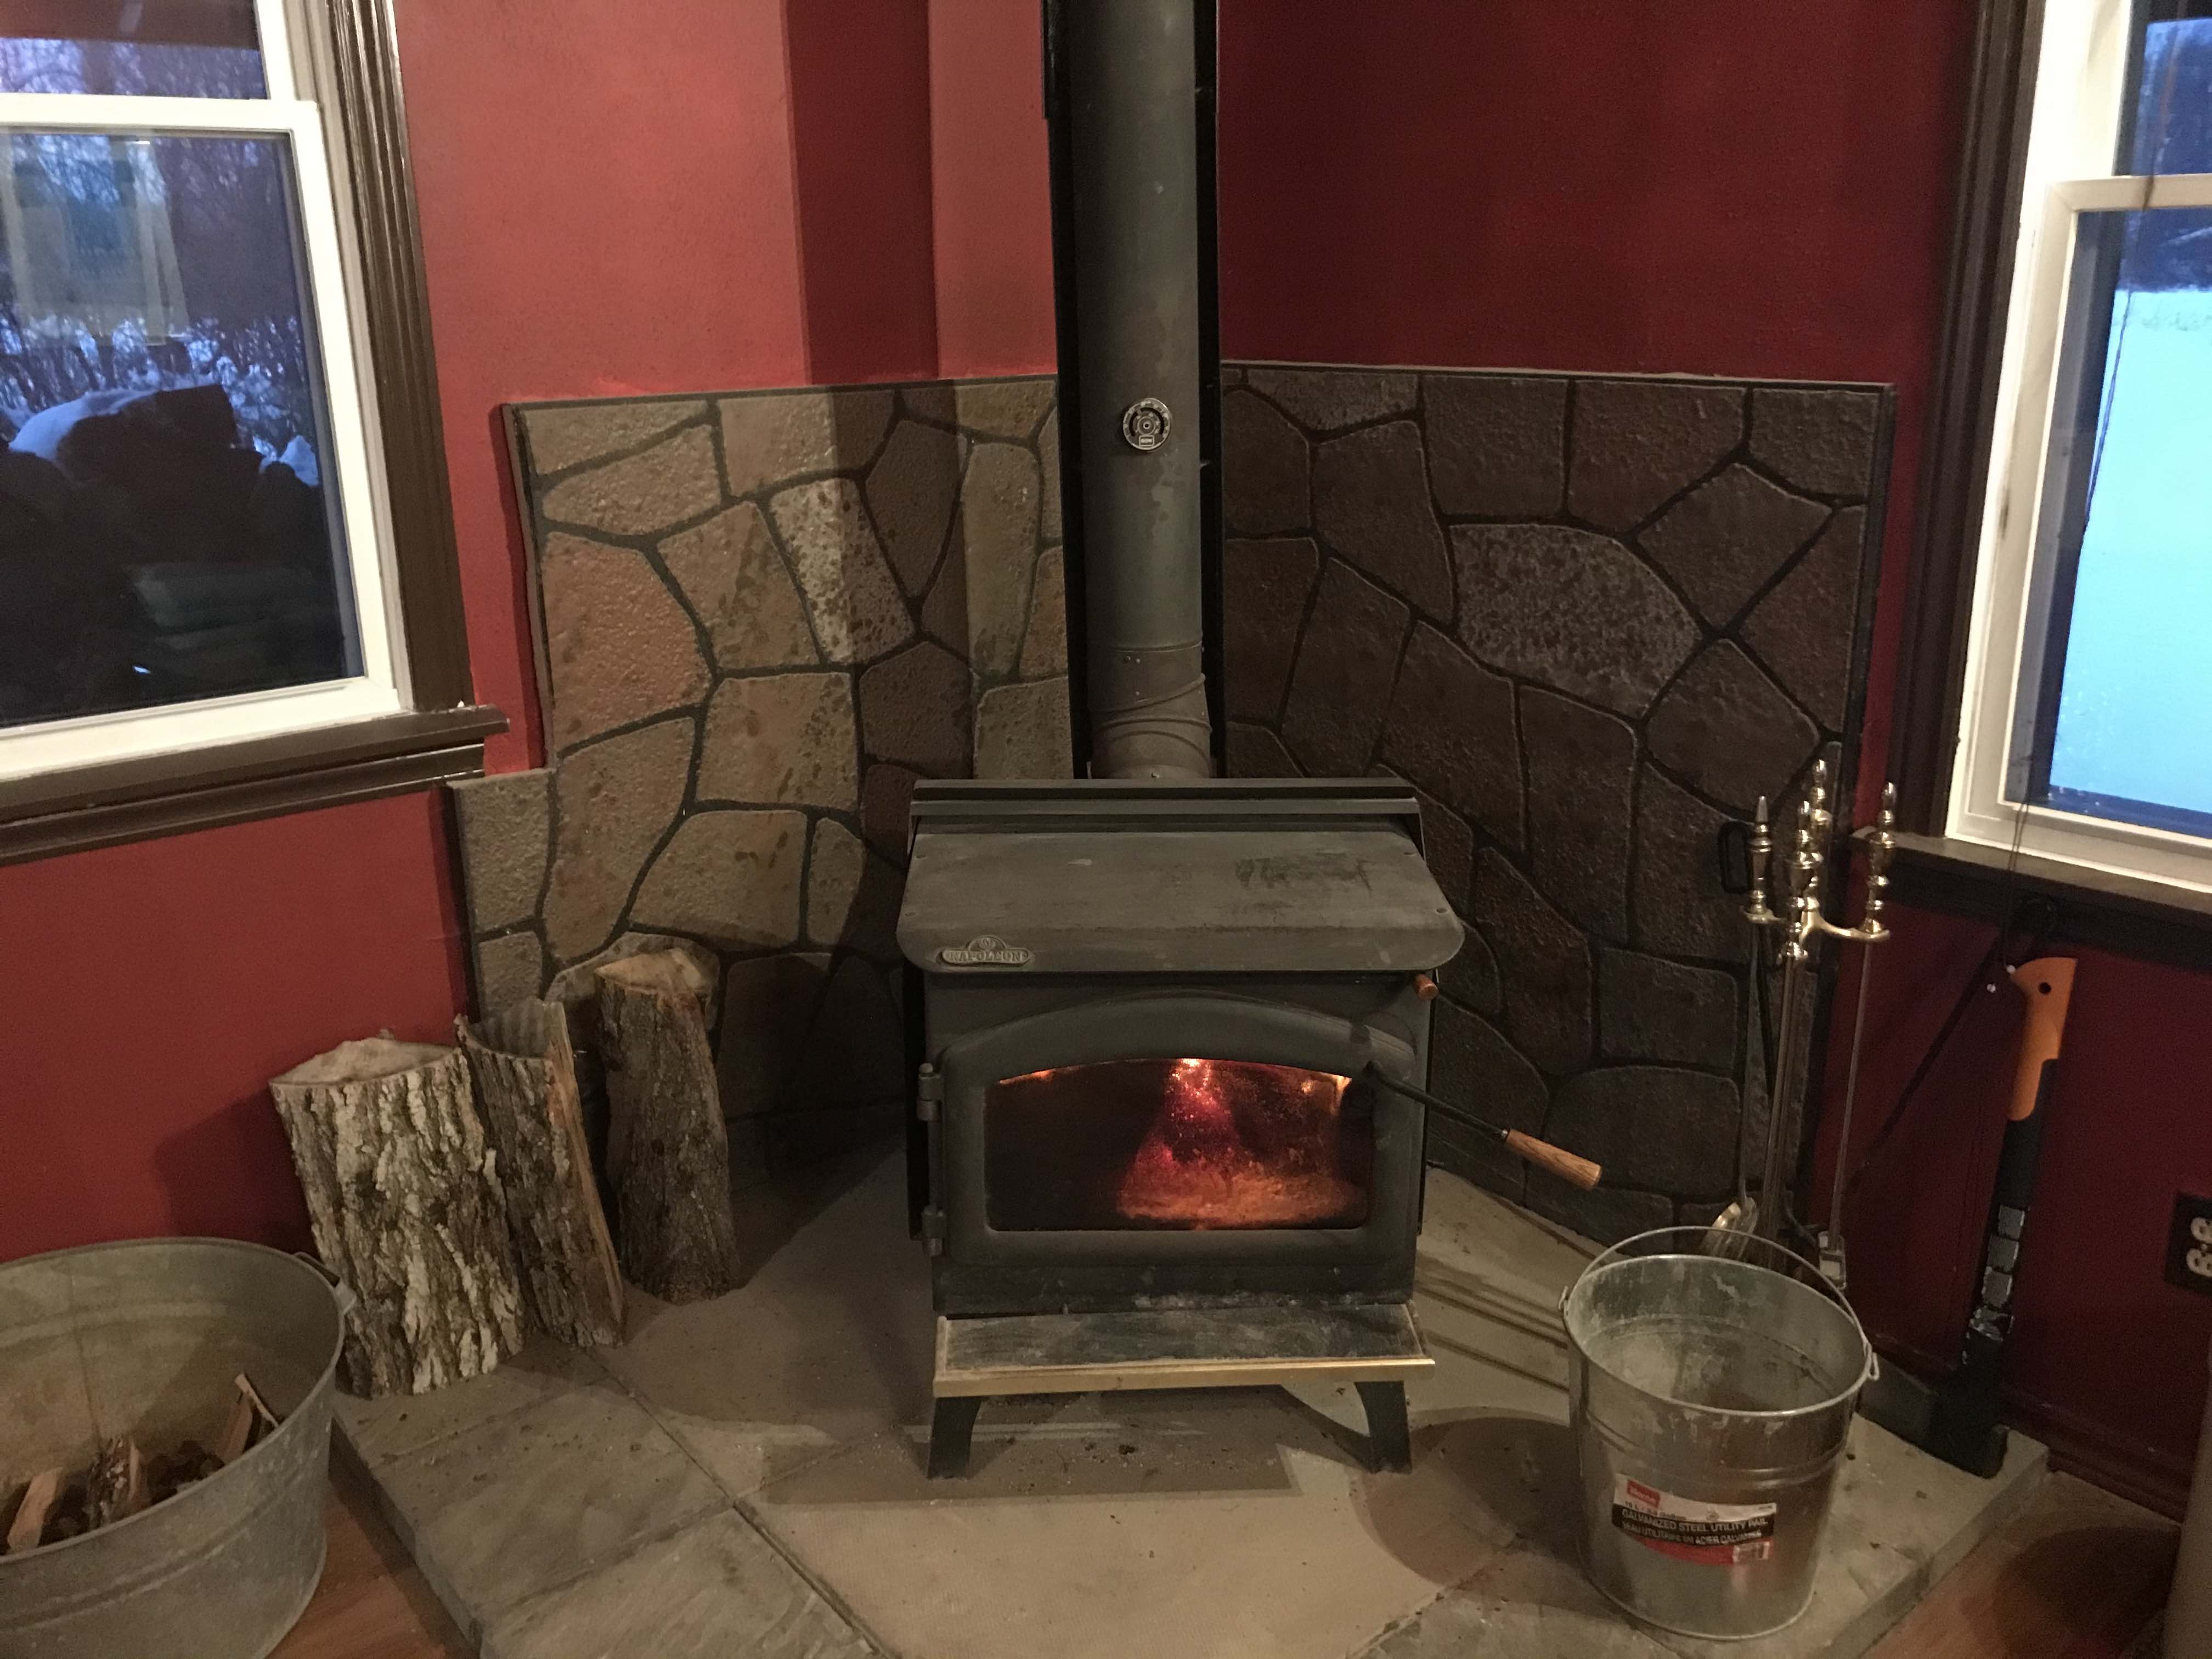 The wood stove